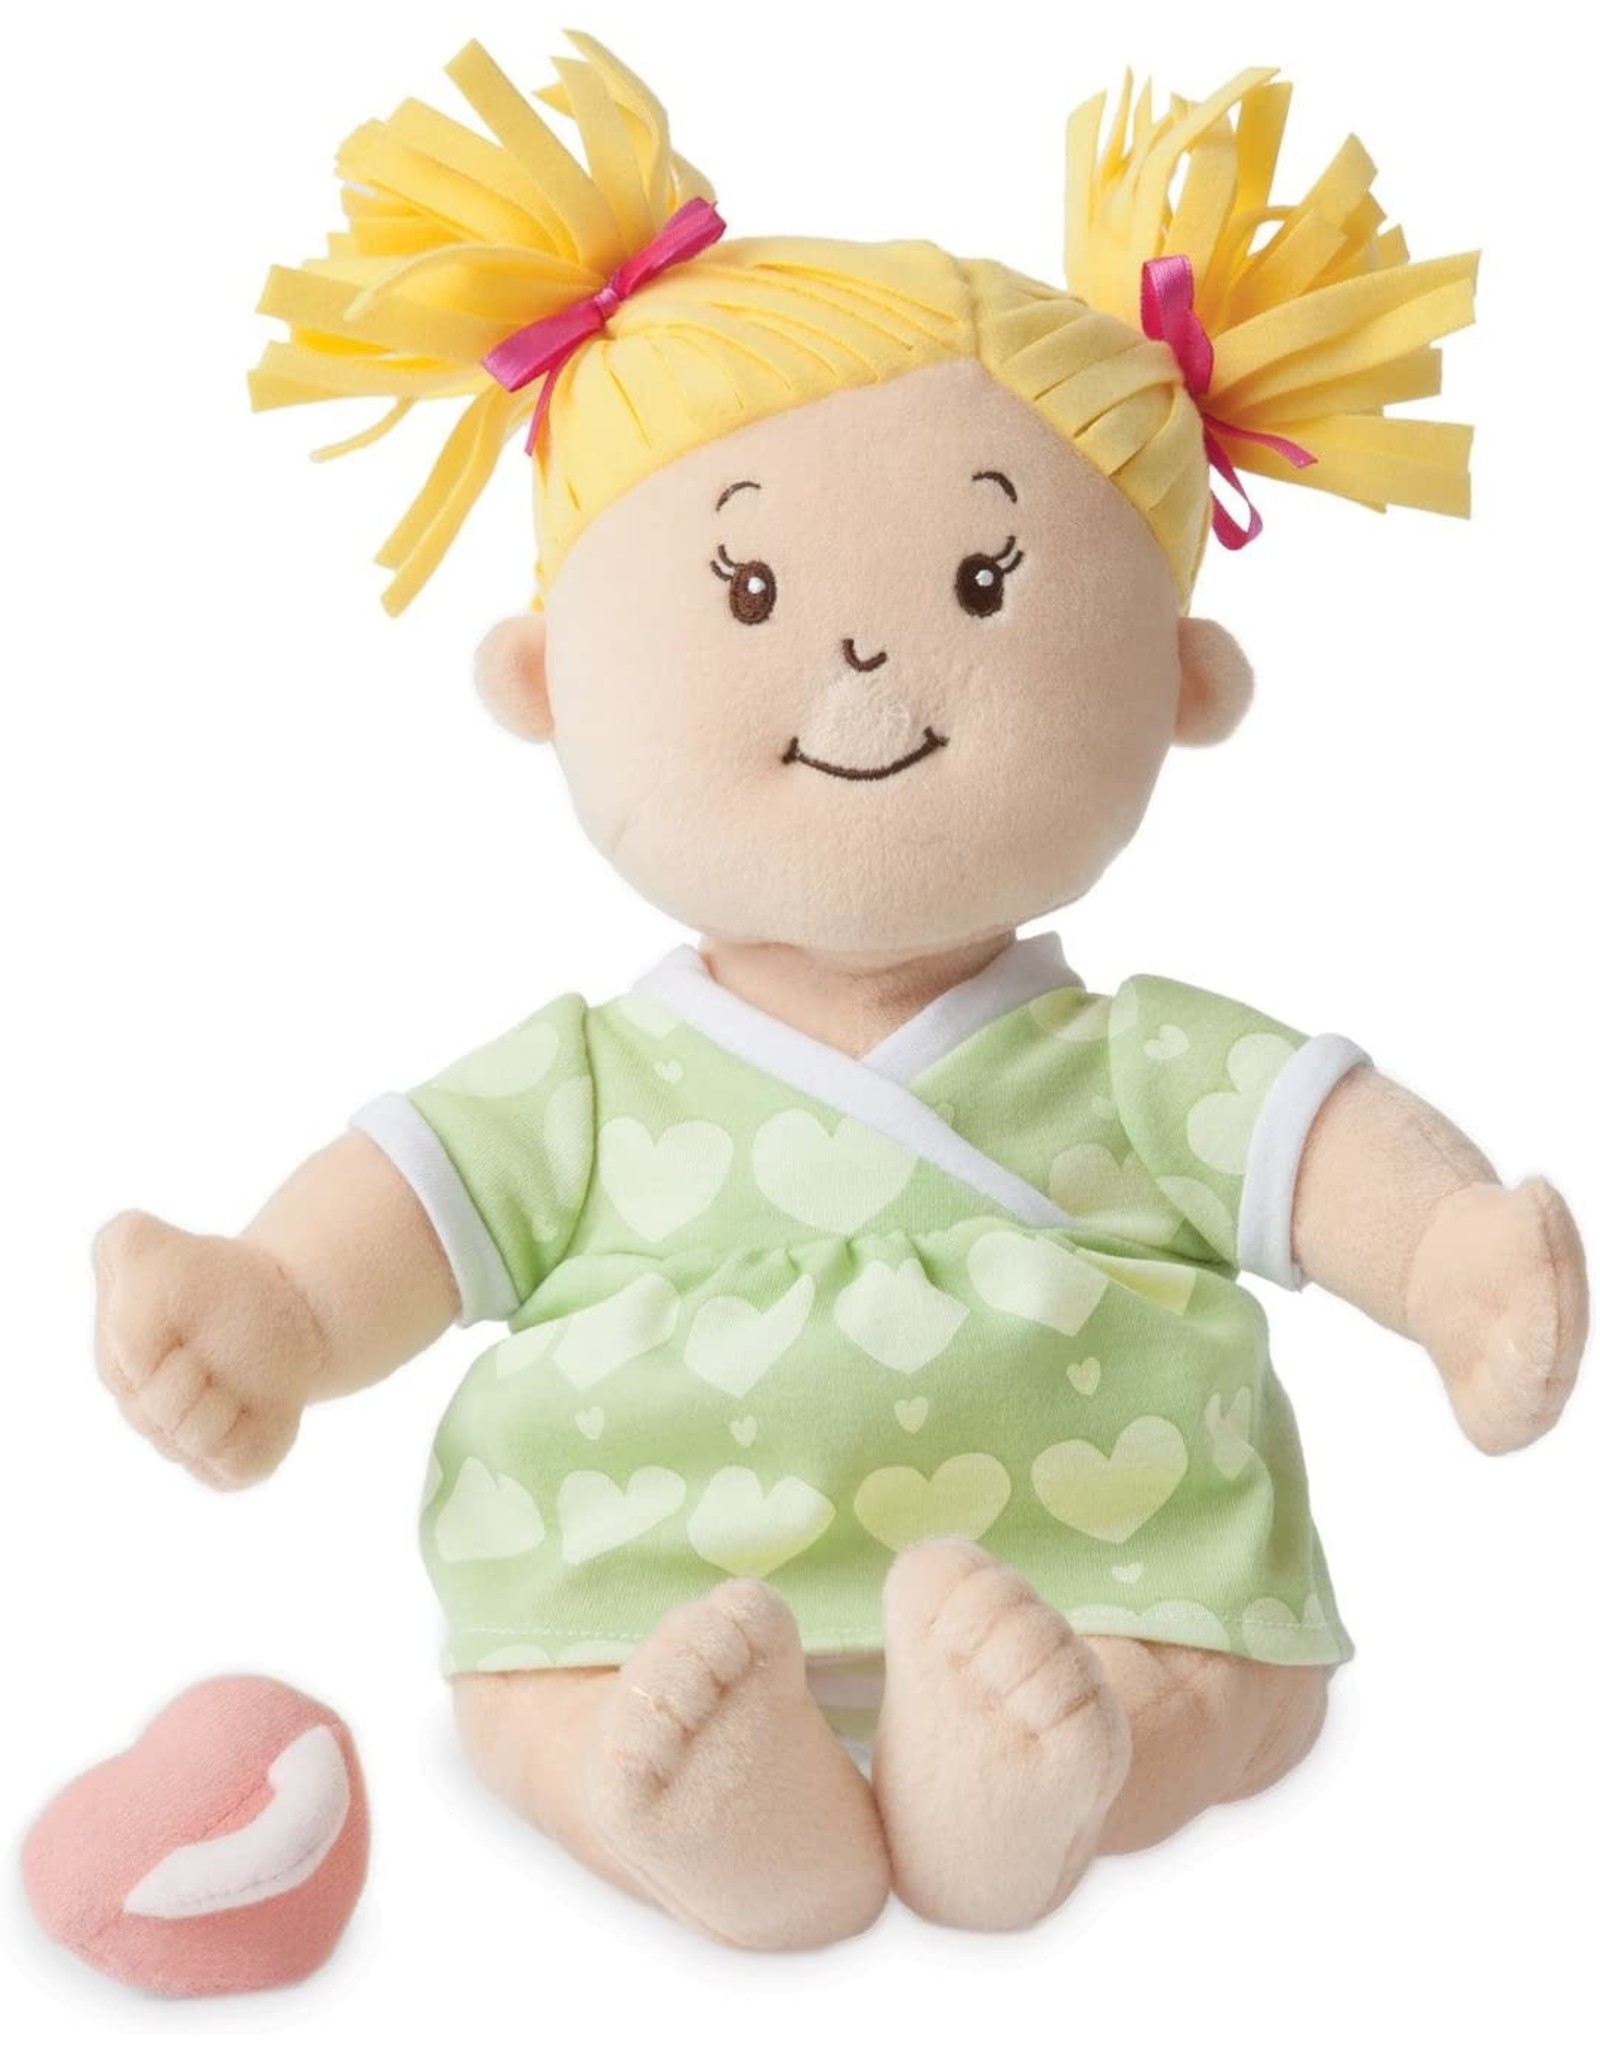 Baby Stella Baby Stella Peach Doll - Blonde Hair